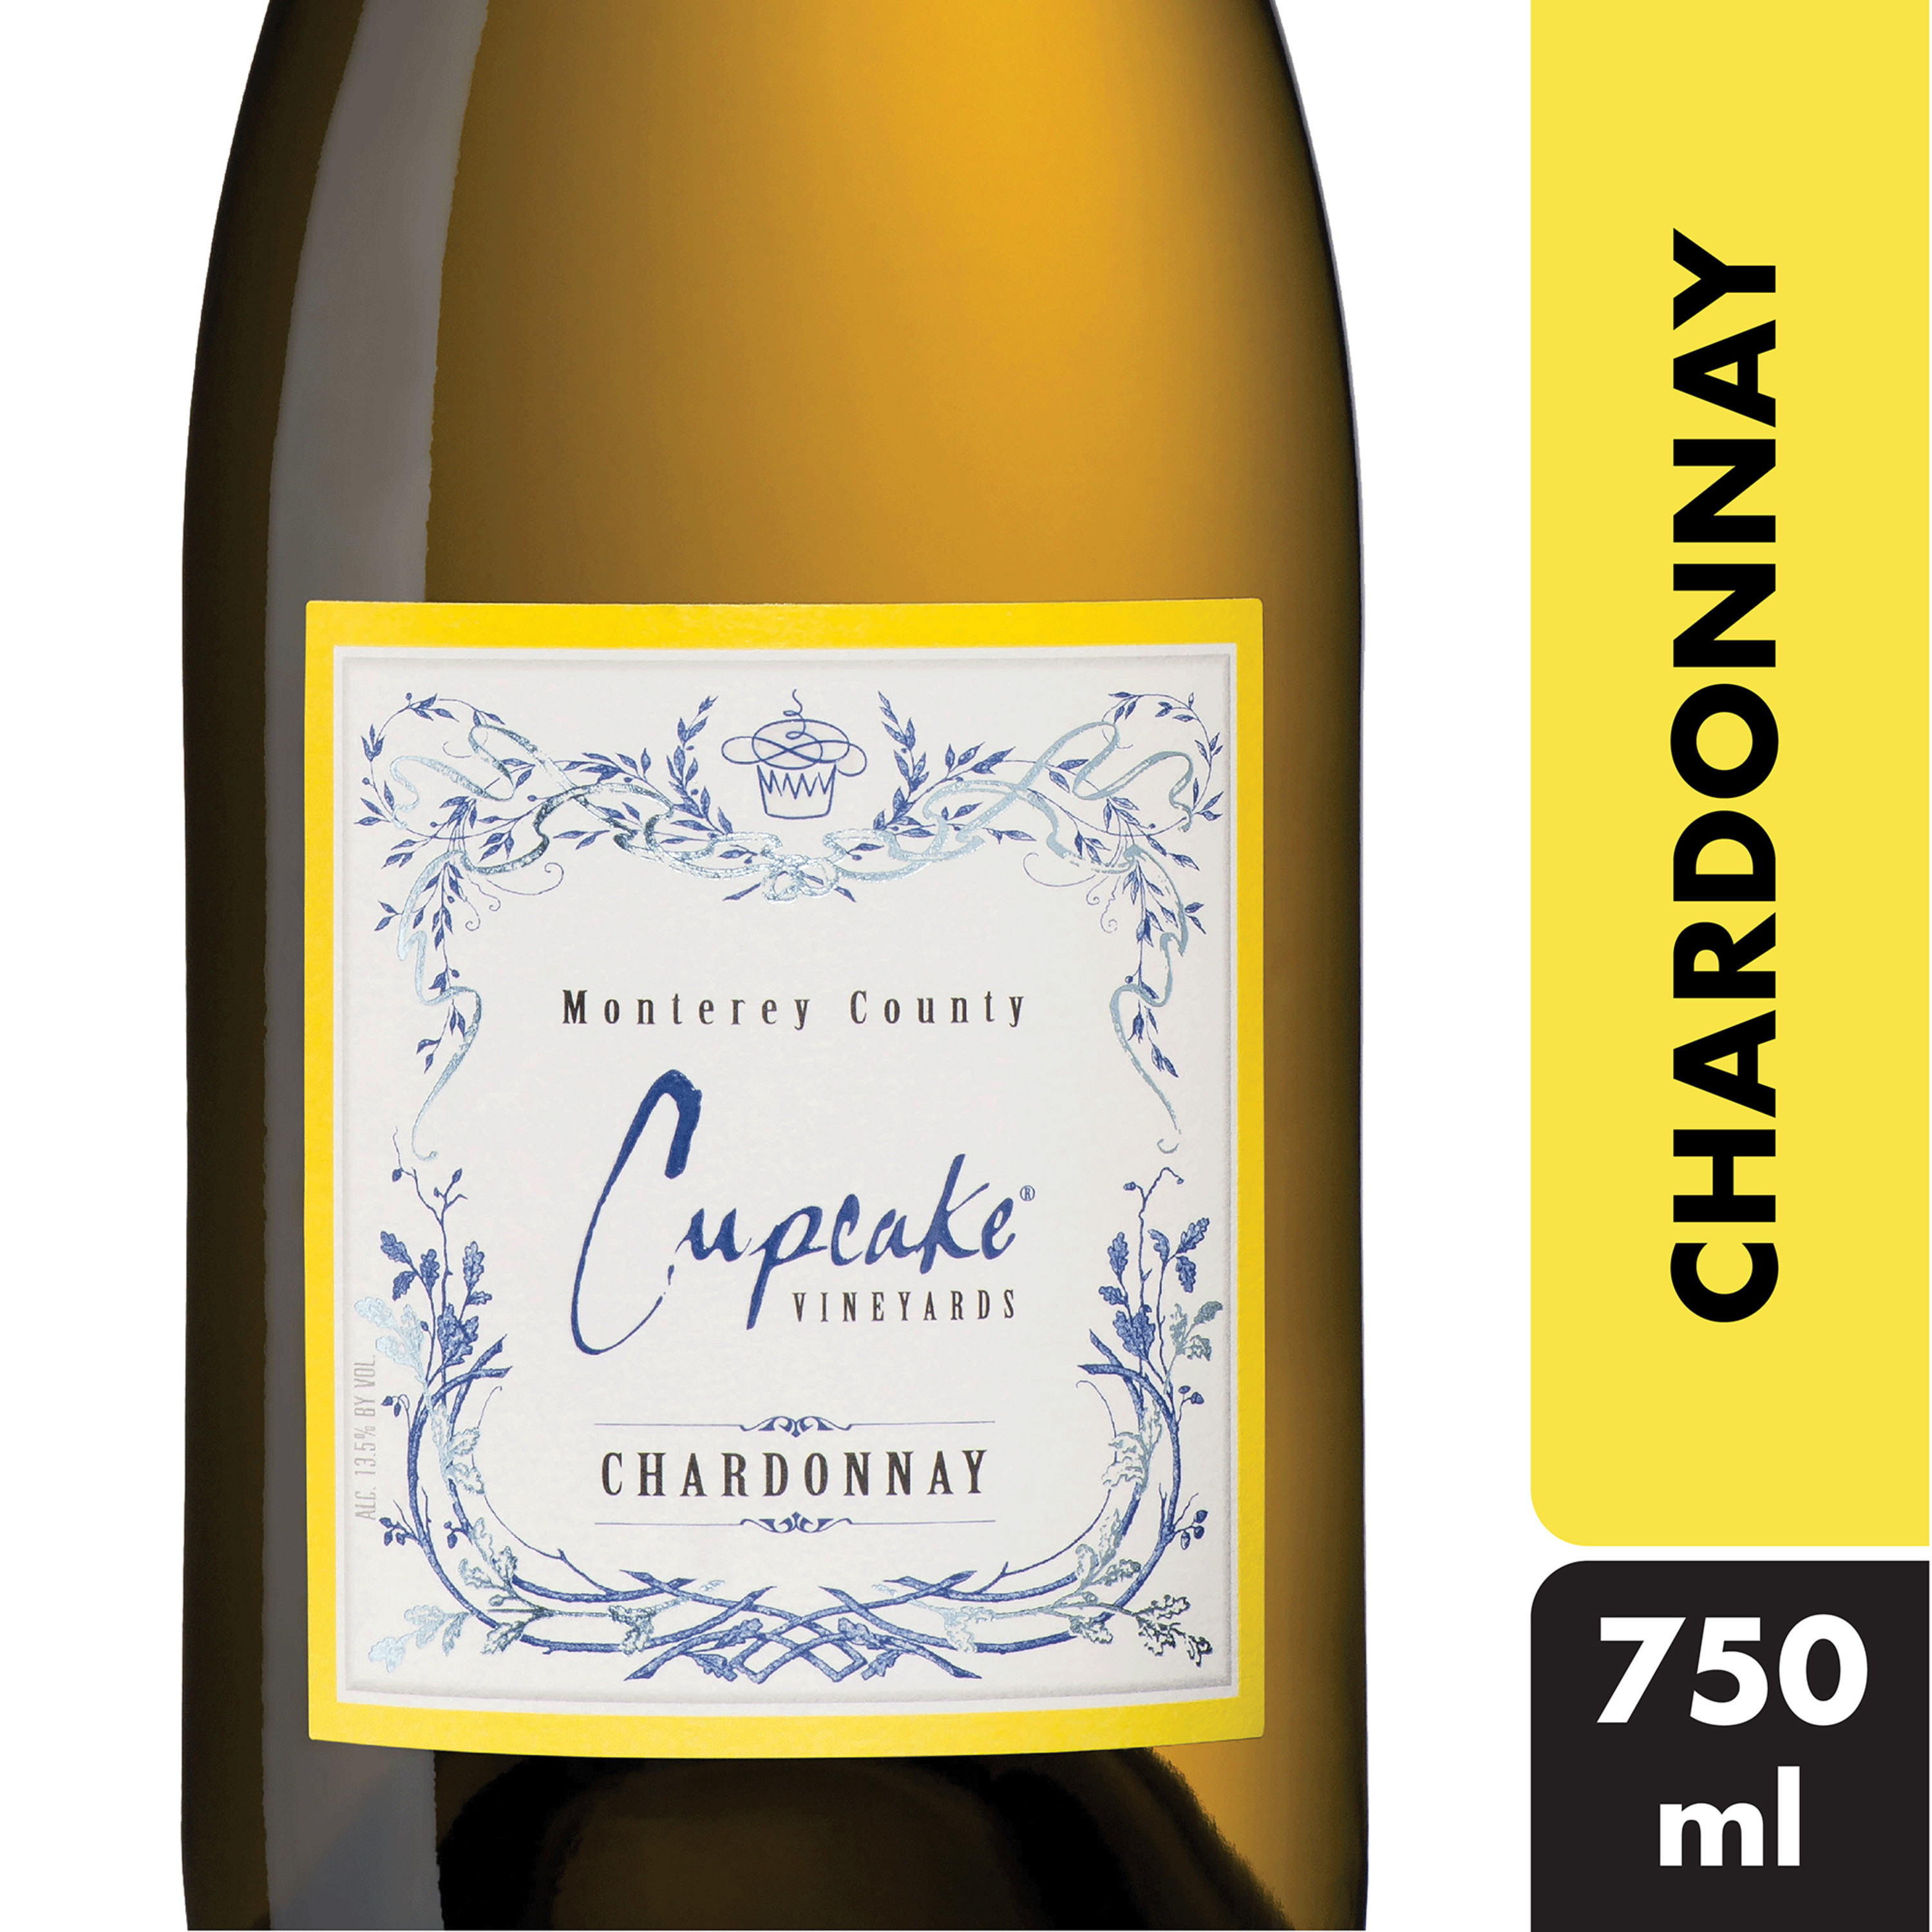 Cupcake Vineyards Chardonnay White Wine 750ml 2018 Monterey County 